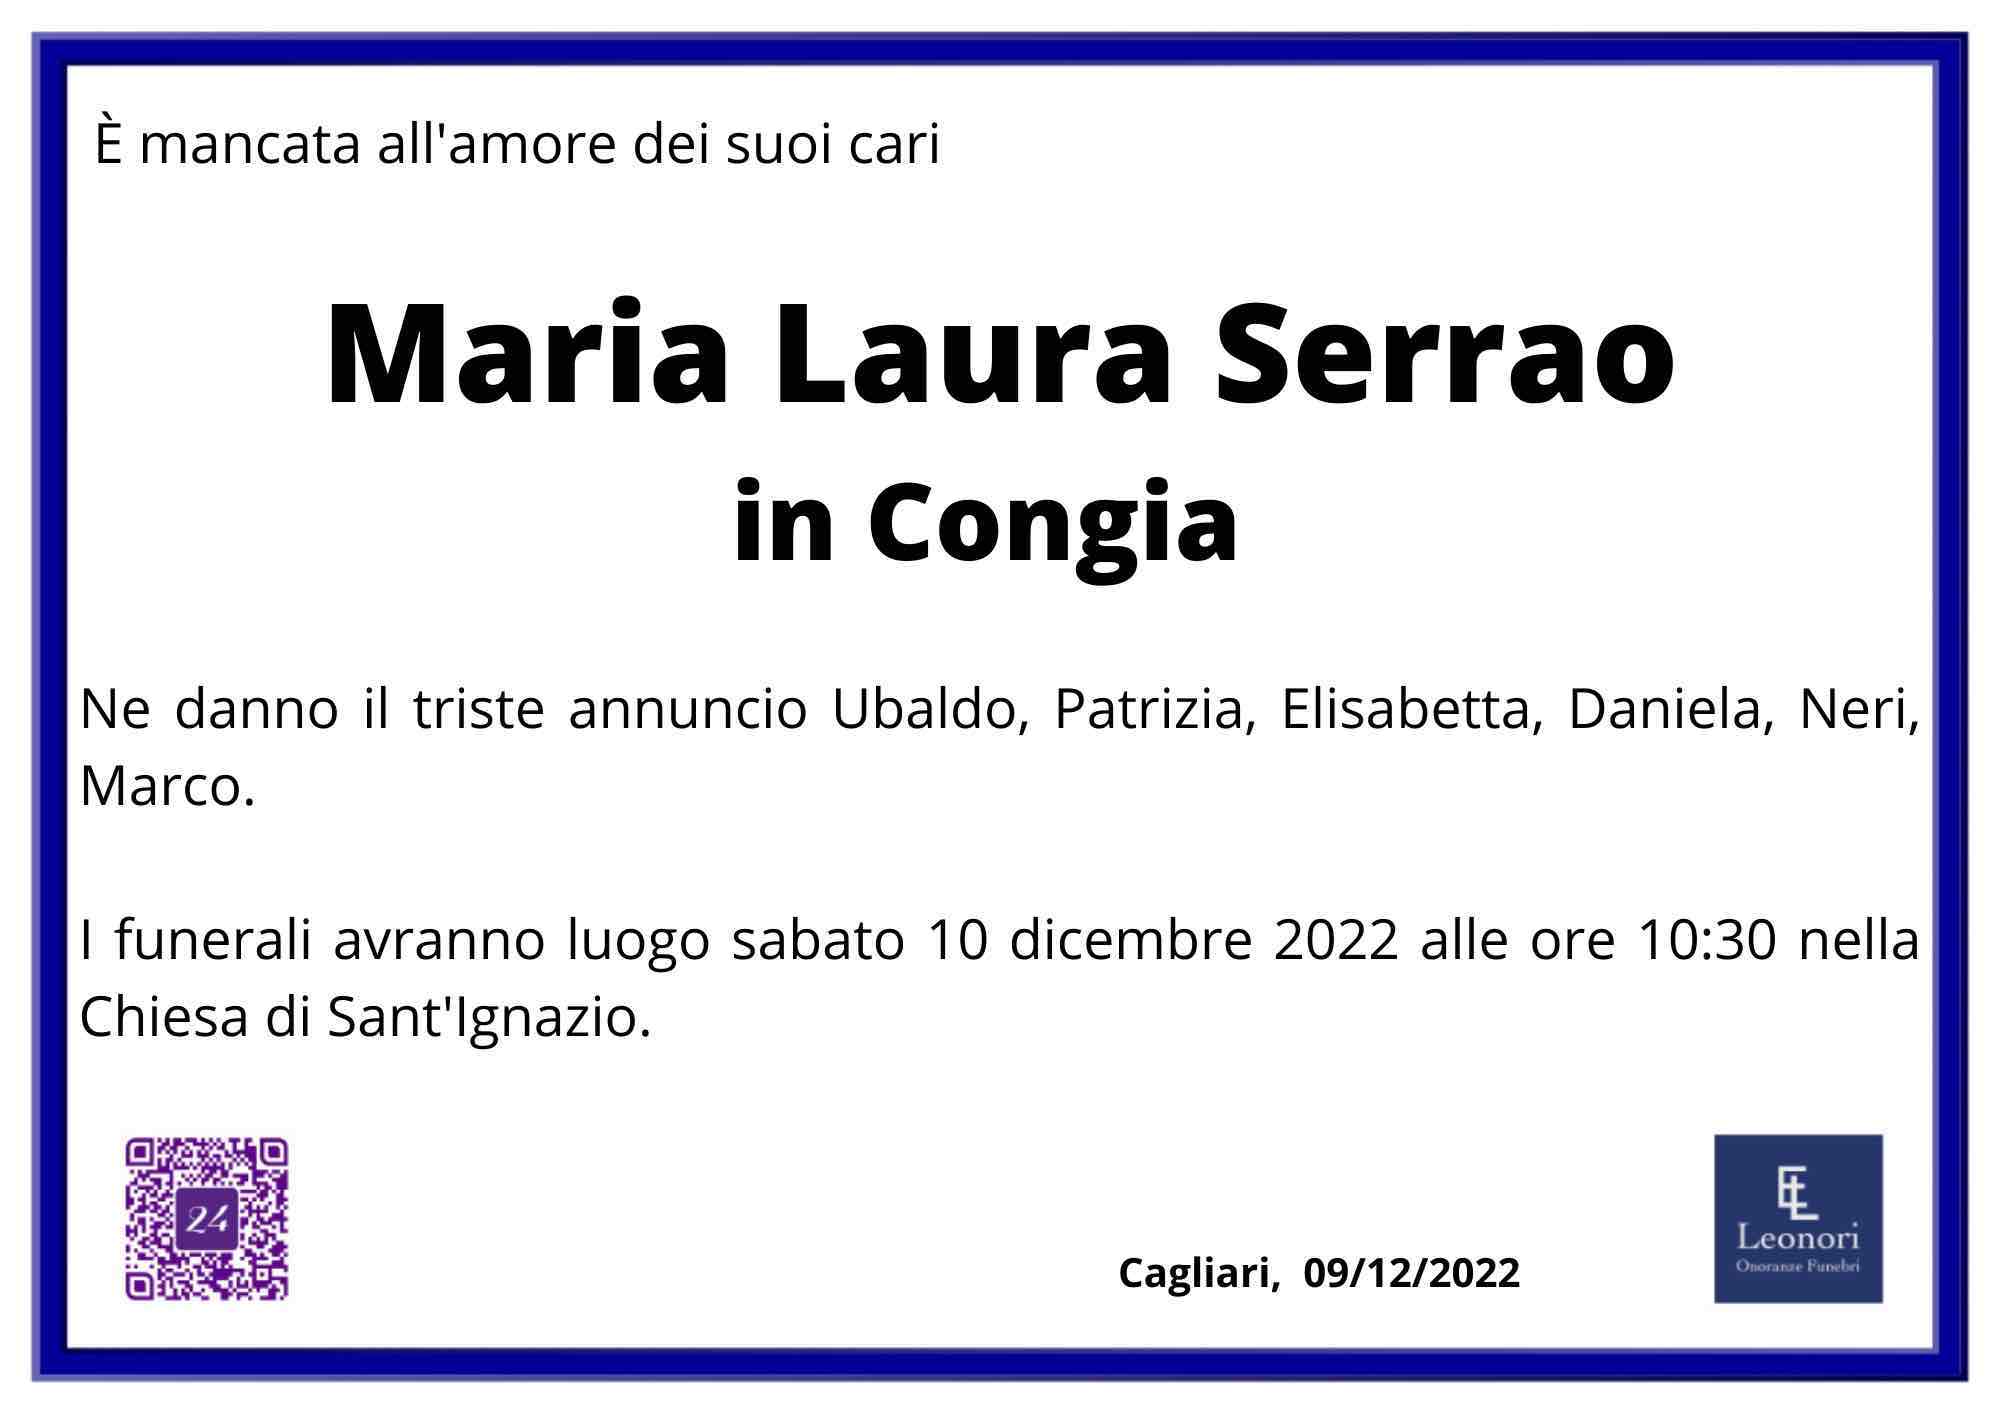 Maria Laura Serrao